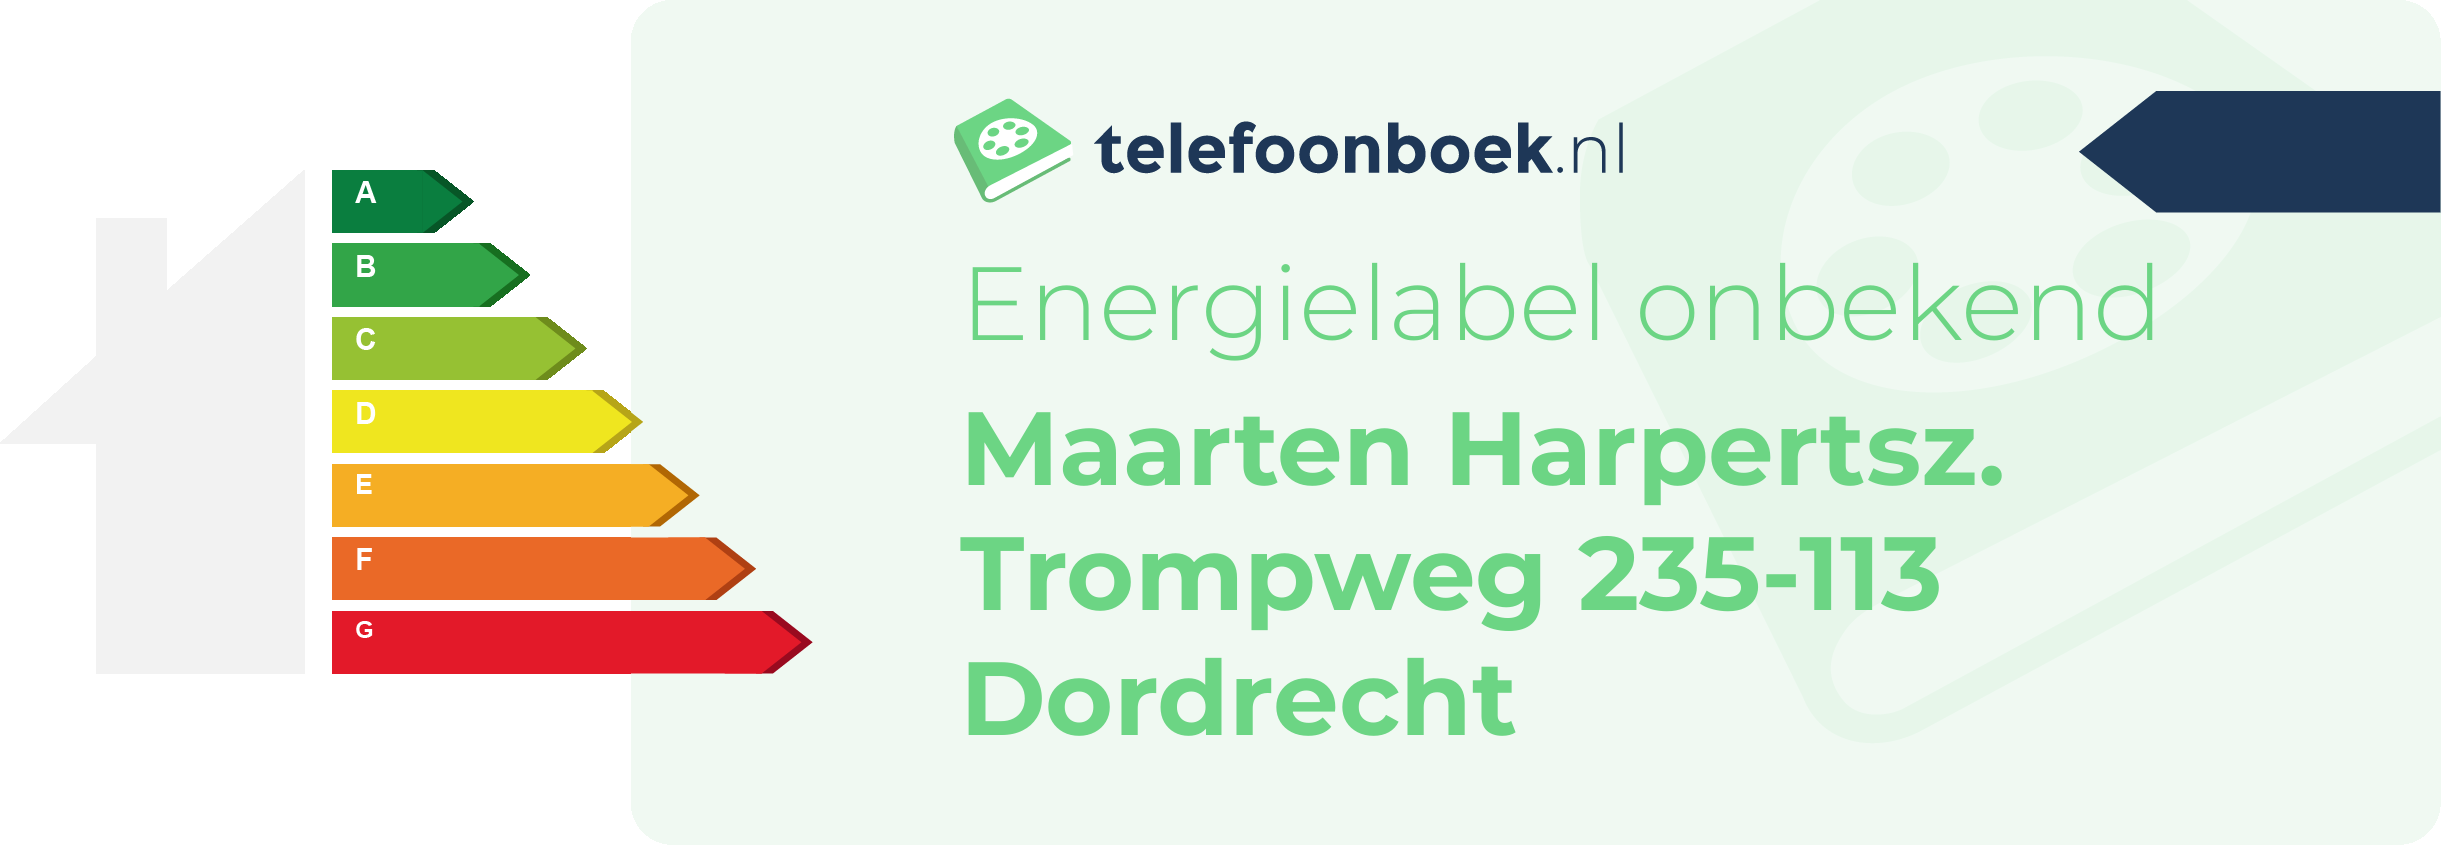 Energielabel Maarten Harpertsz. Trompweg 235-113 Dordrecht